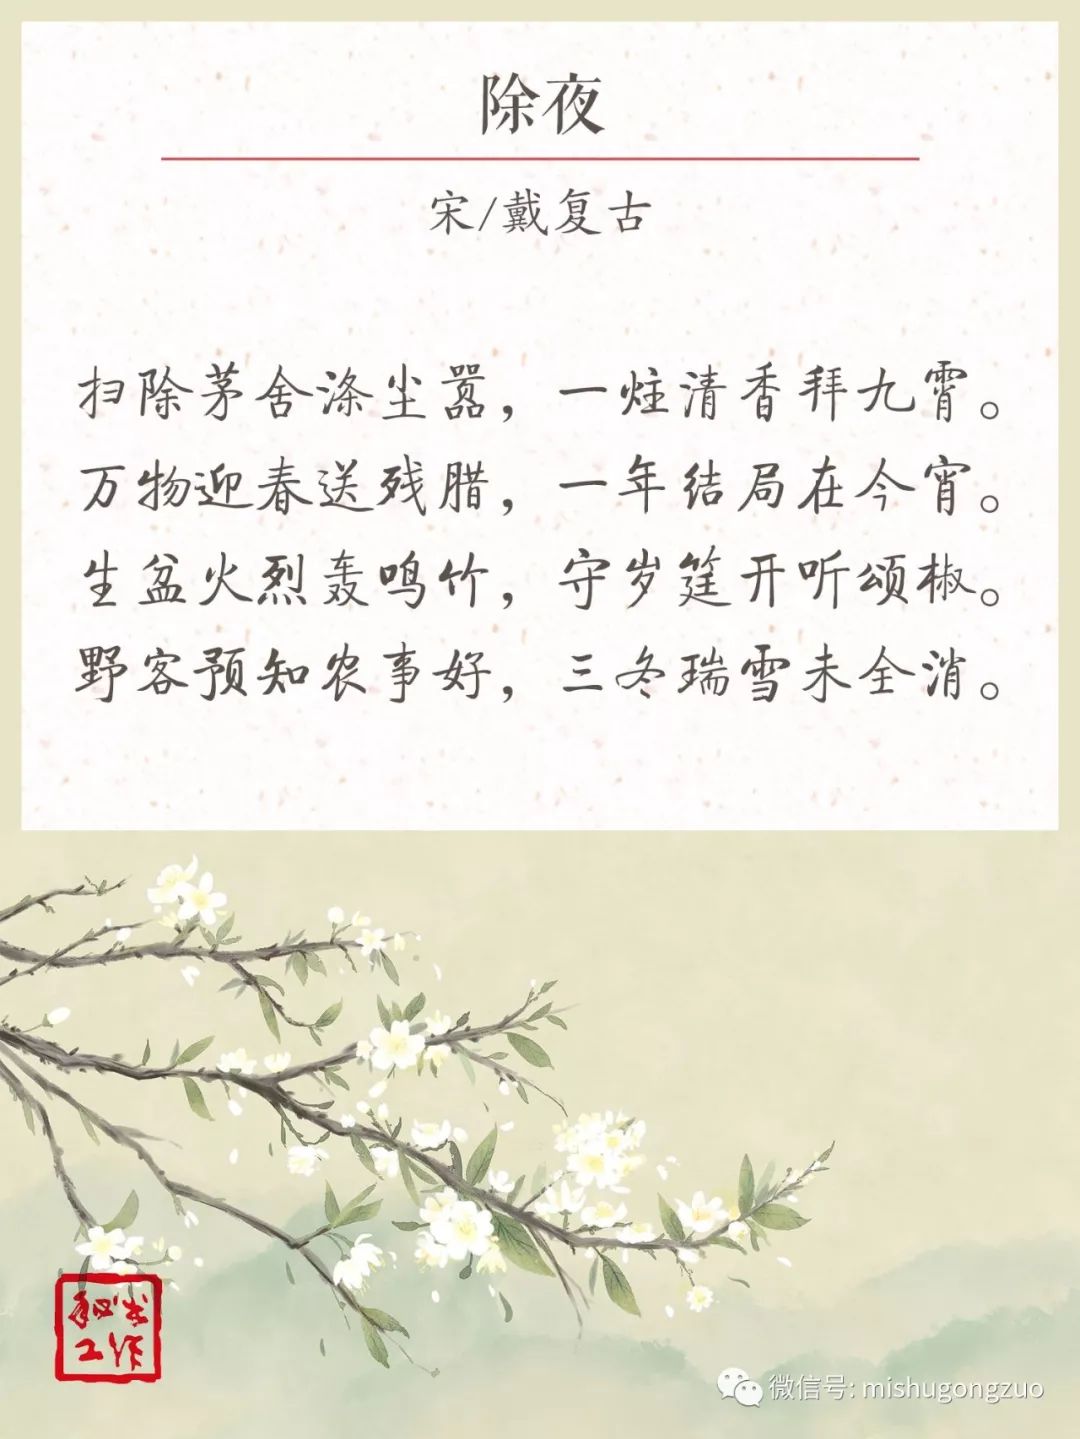 古往今来,除夕与春节是人们重视的传统节日,歌咏除夕和春节的古诗也有